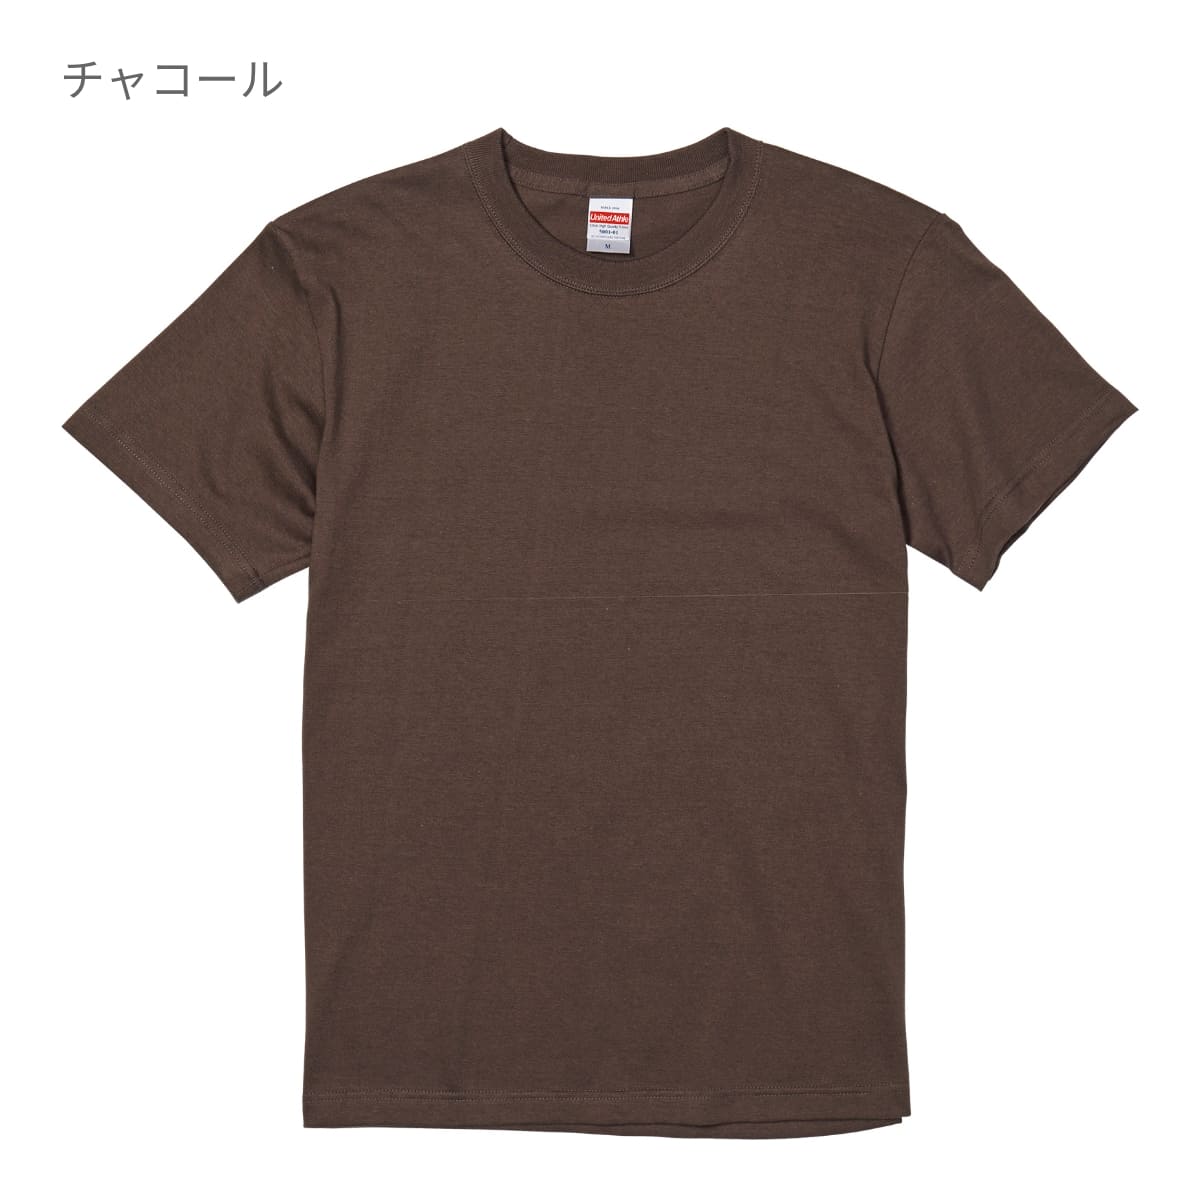 5.6オンス ハイクオリティーTシャツ | ビッグサイズ | 1枚 | 5001-01 | ラベンダー